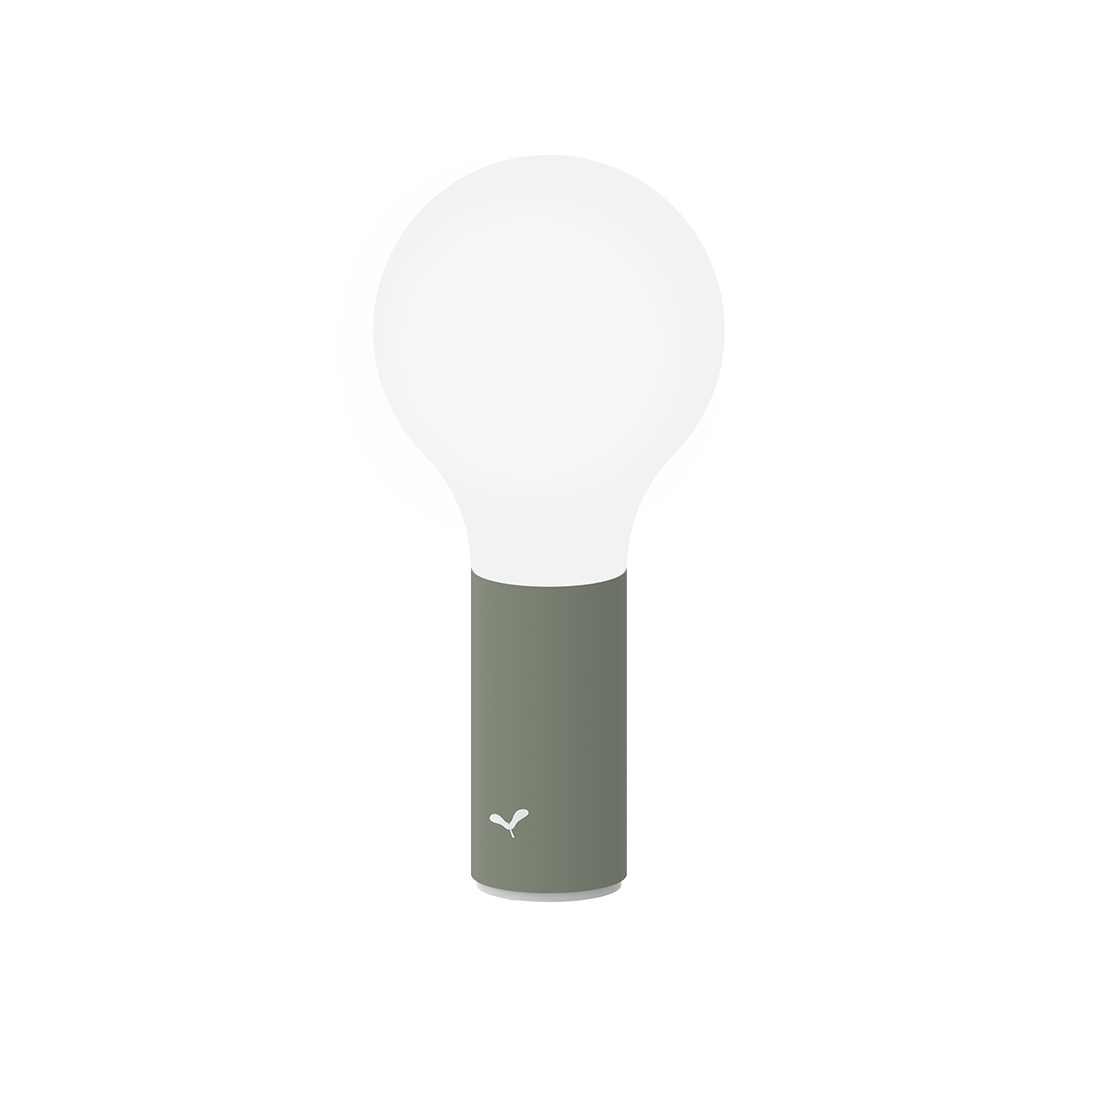 FERMOB Aplo Wireless LED Lamp - CACTUS